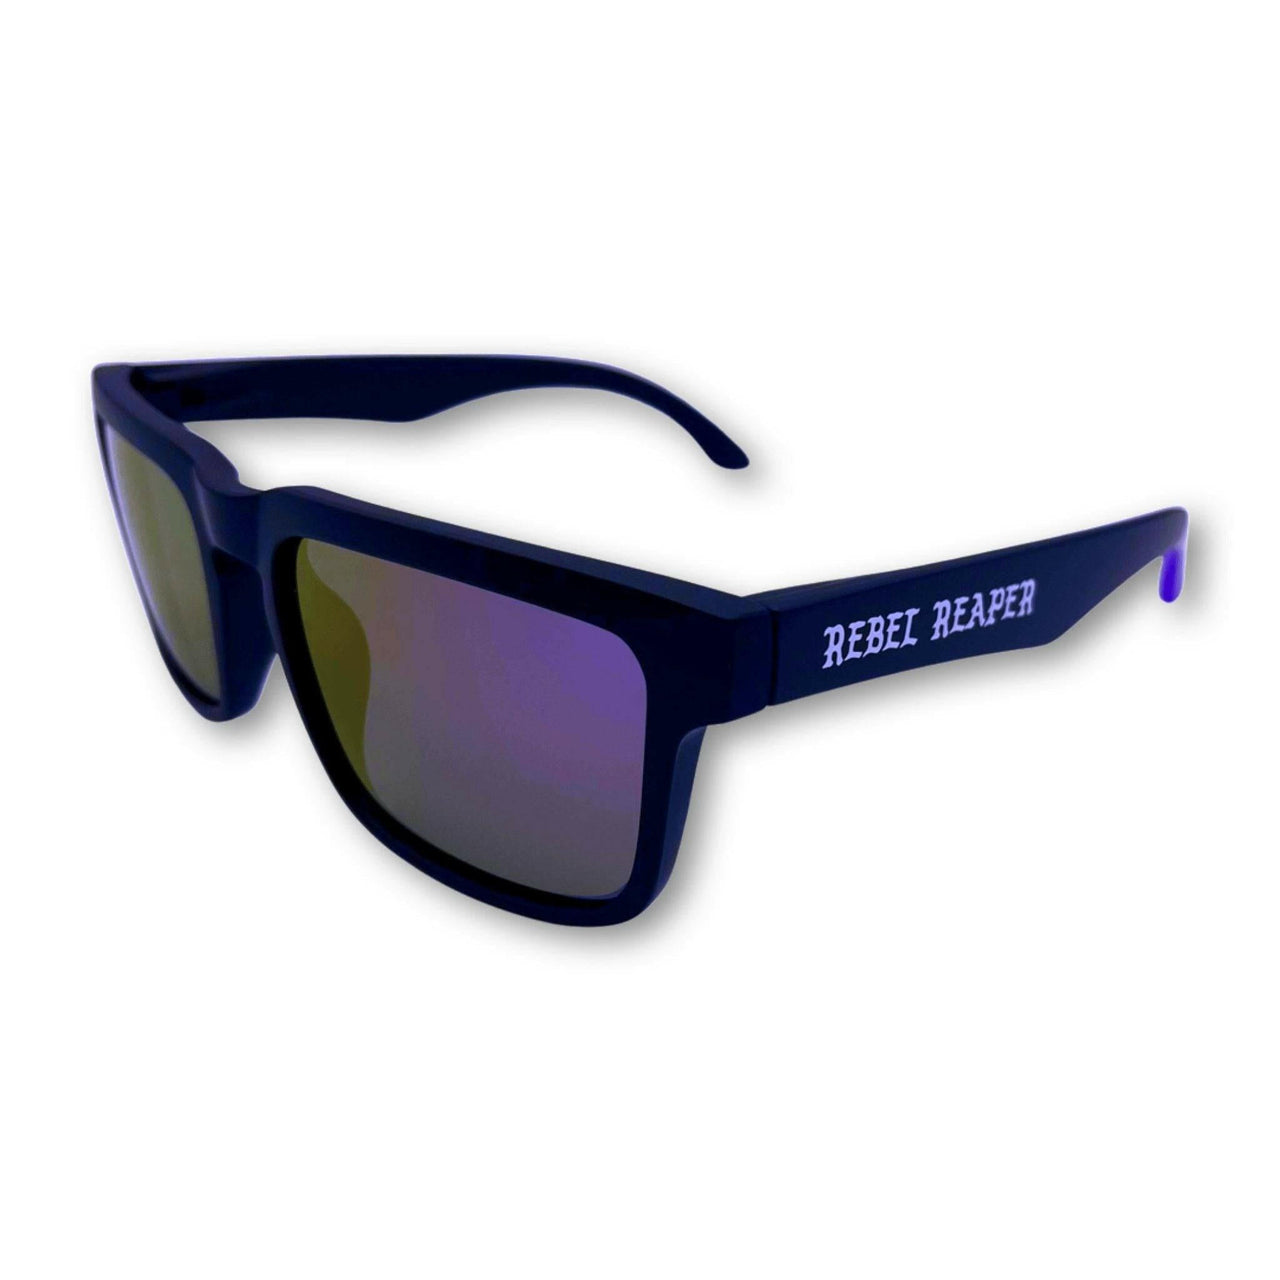 Hustler Purple & Black Sunglasses